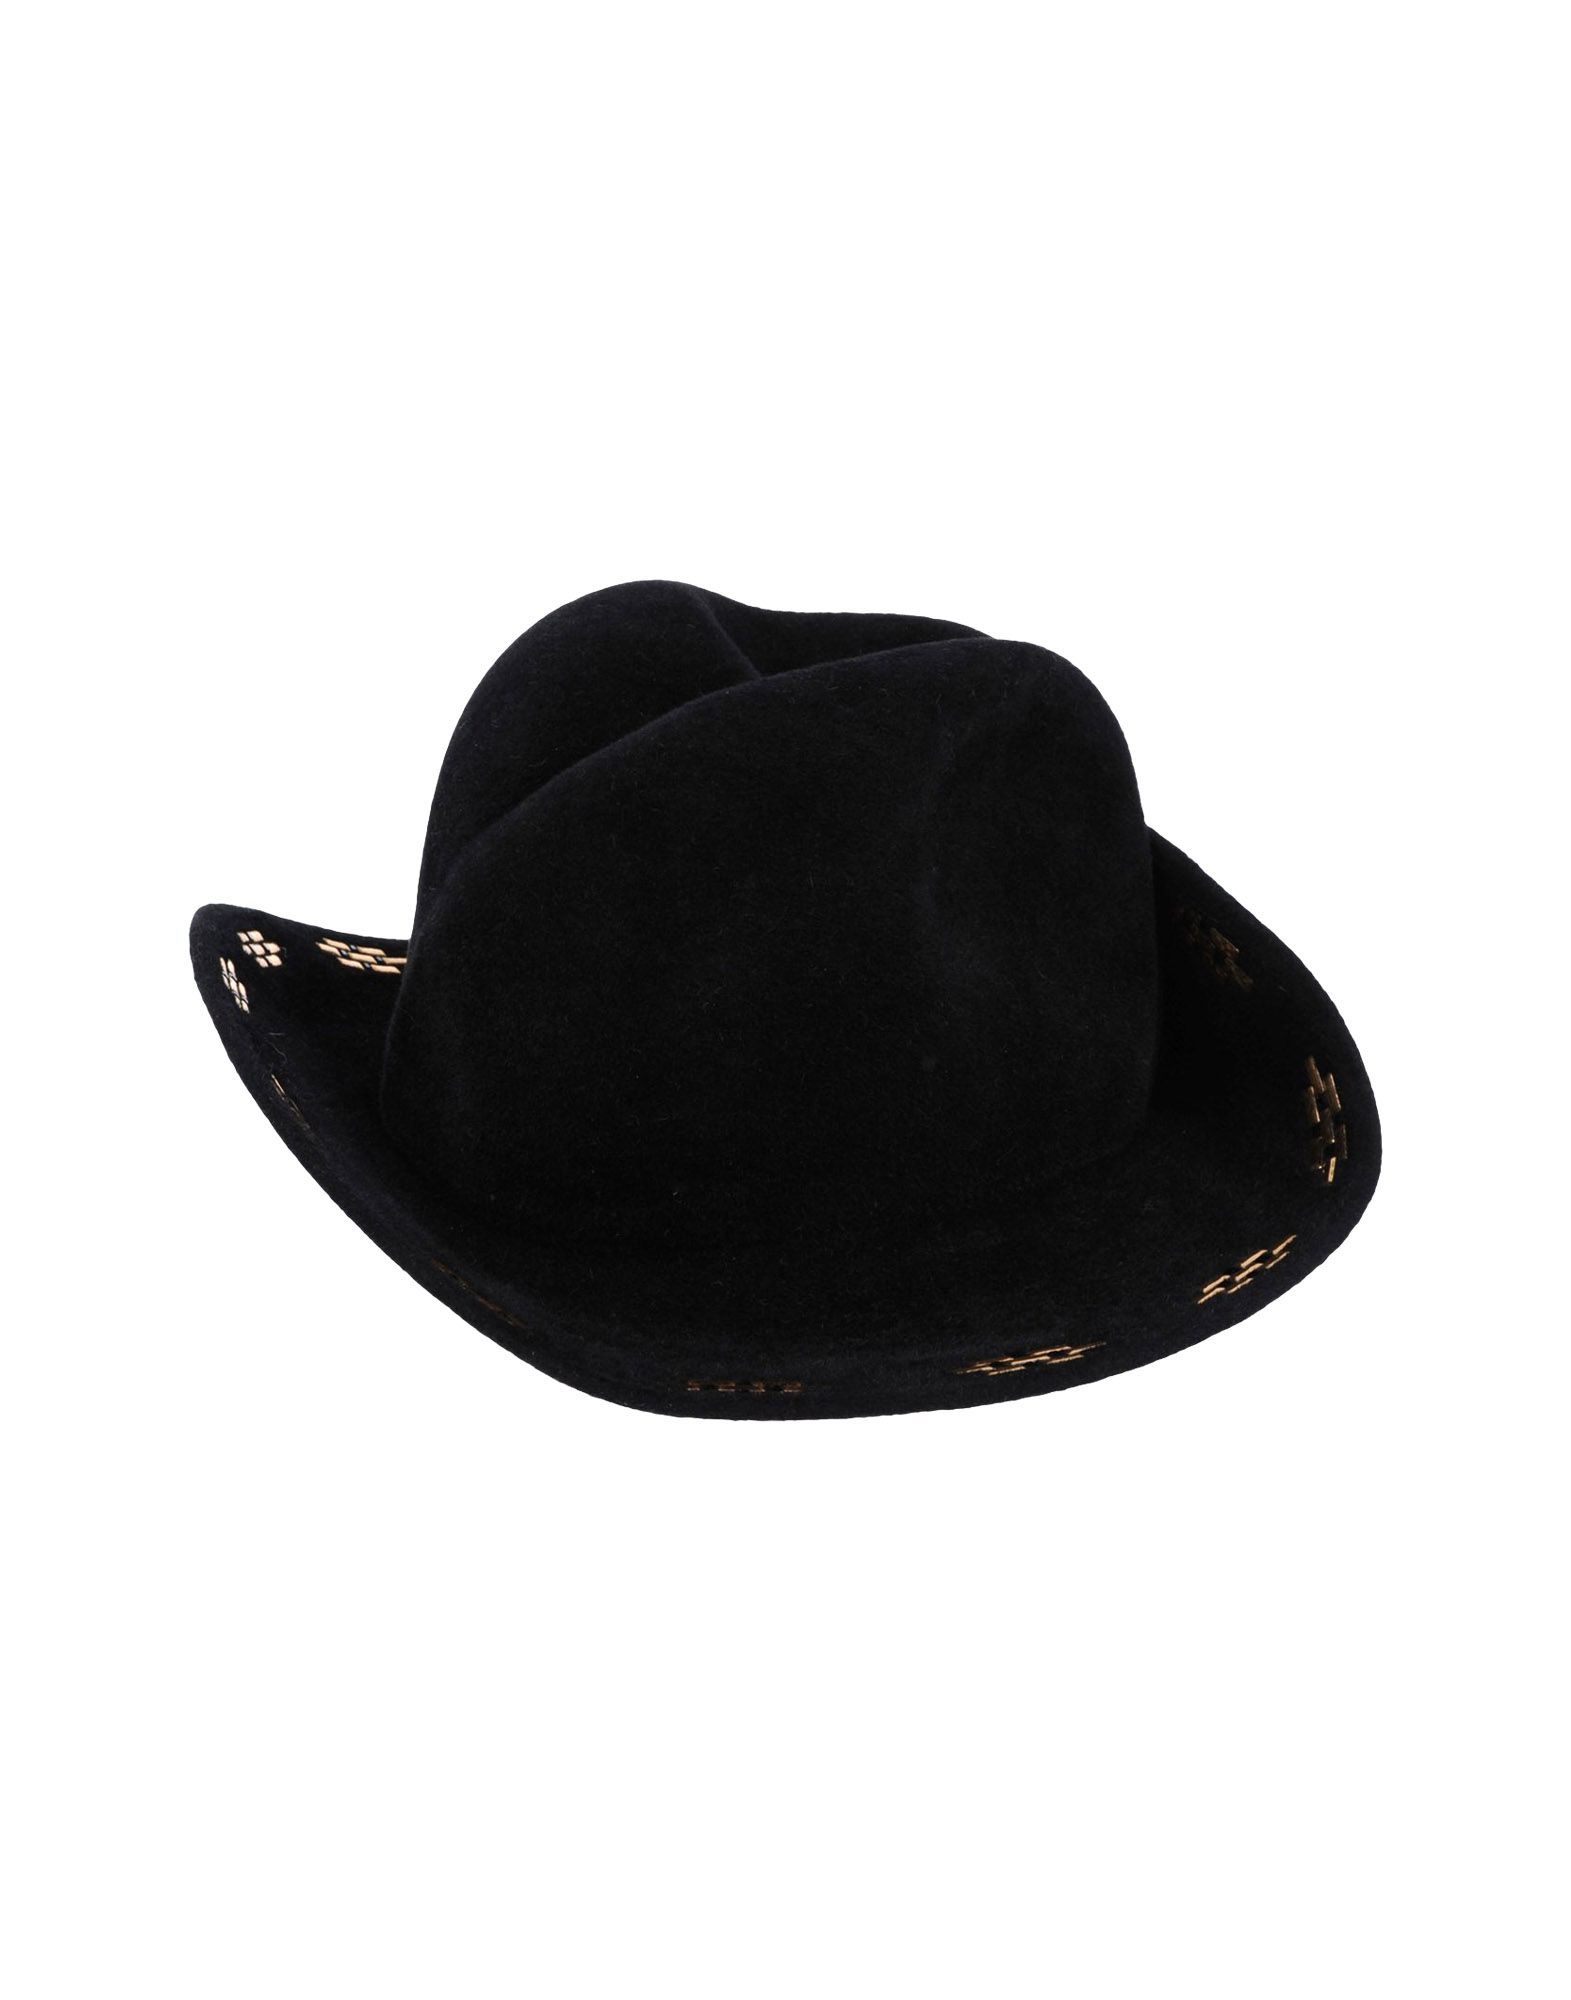 《送料無料》GIGI BURRIS MILLINERY レディース 帽子 ブラック 55 ウール 100%